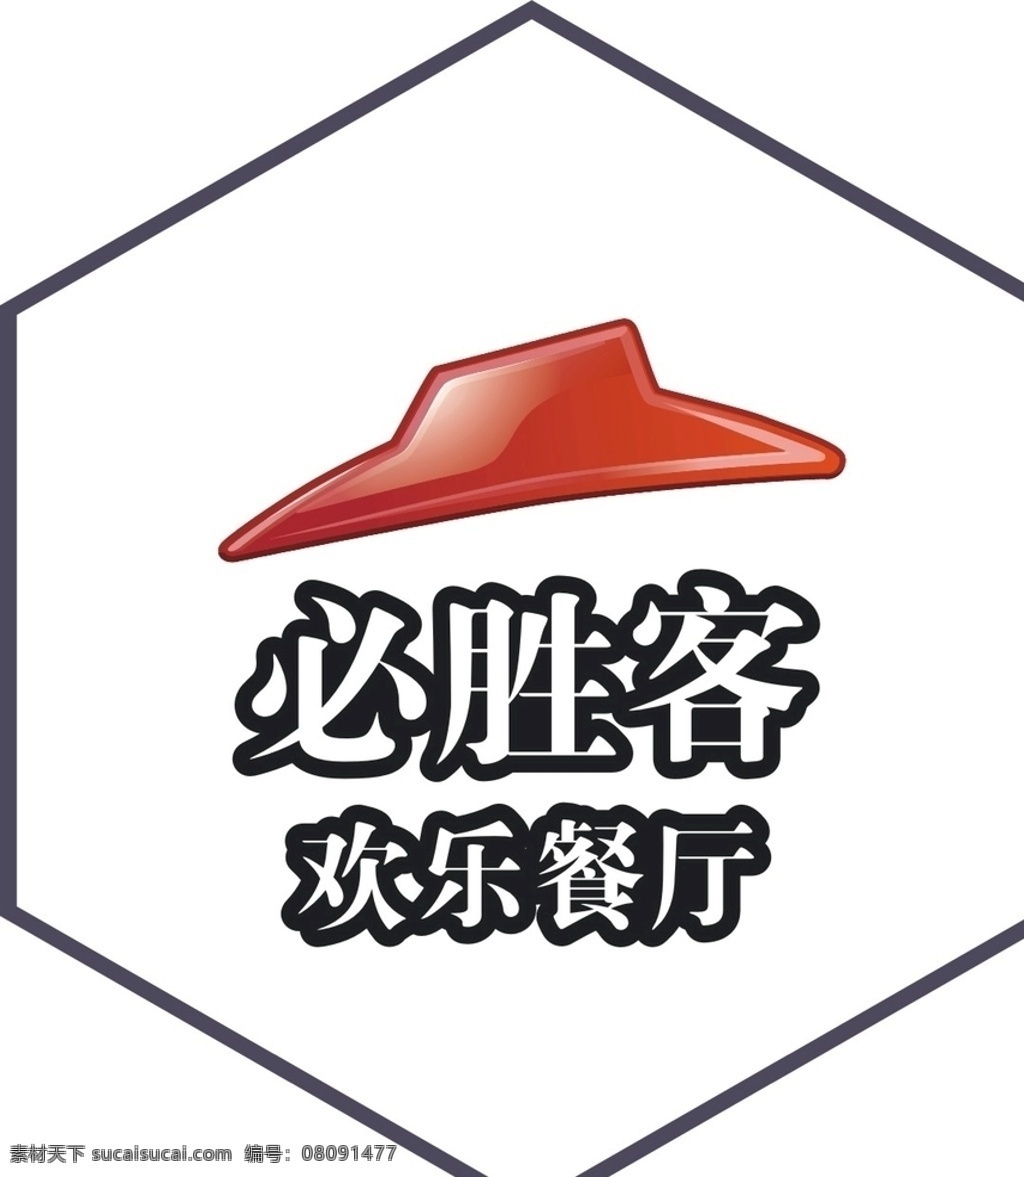 必胜客 logo 品牌logo 麦当劳 良品铺子 红孩子 新视野眼镜 金泊利钻石